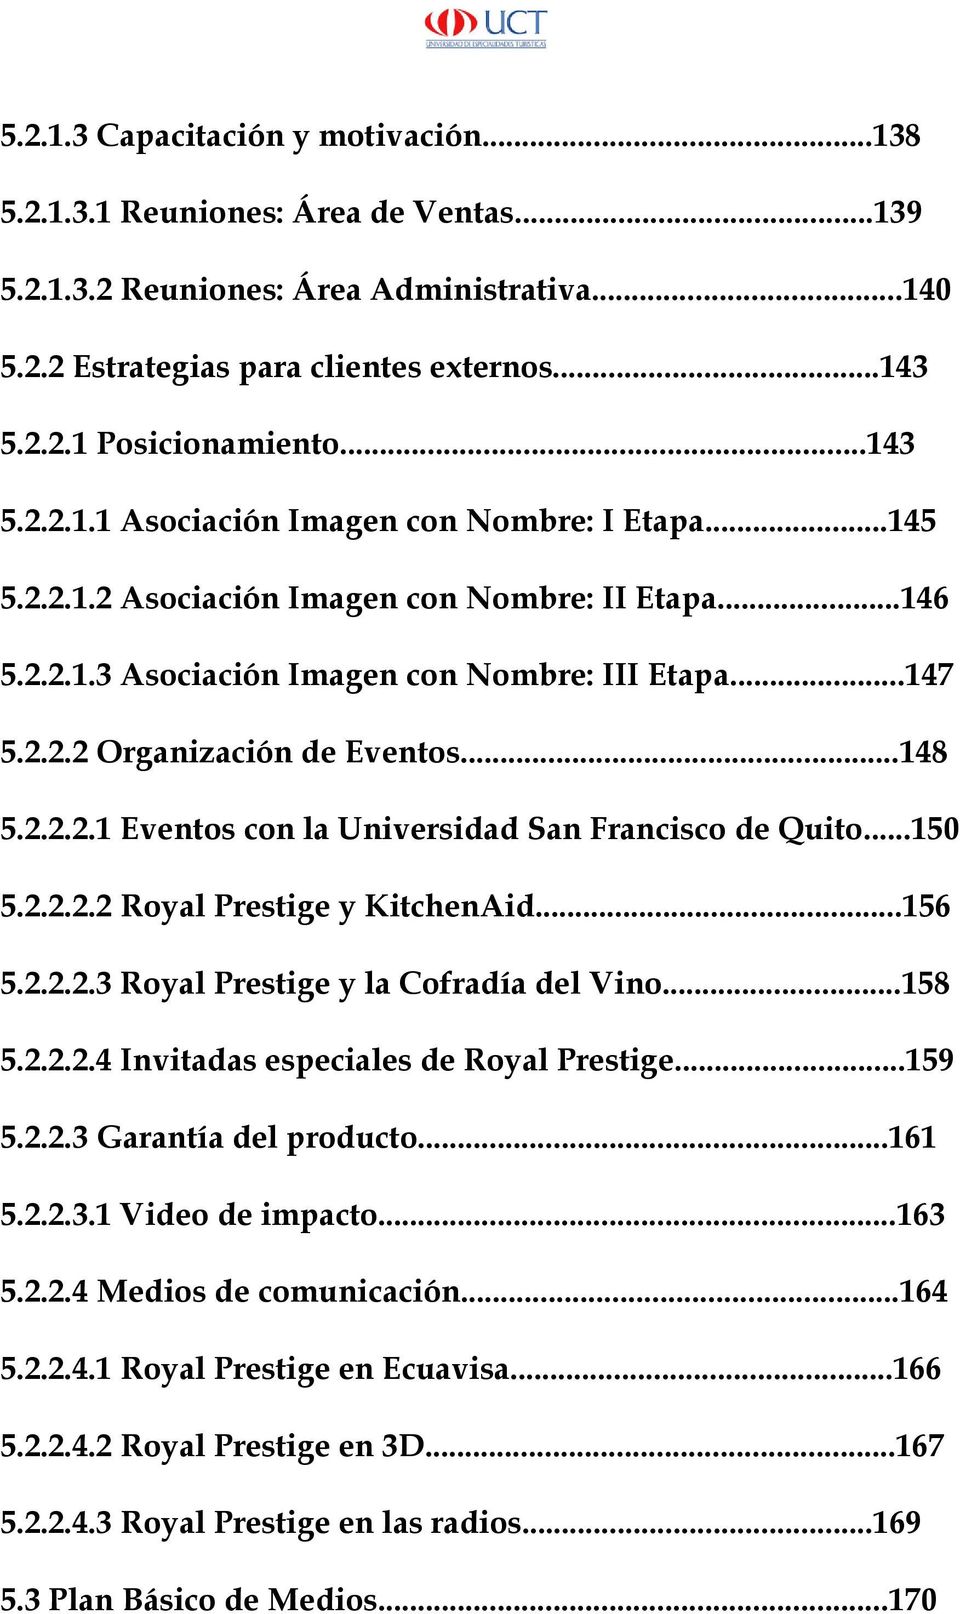 ..148 5.2.2.2.1 Eventos con la Universidad San Francisco de Quito...150 5.2.2.2.2 Royal Prestige y KitchenAid...156 5.2.2.2.3 Royal Prestige y la Cofradía del Vino...158 5.2.2.2.4 Invitadas especiales de Royal Prestige.